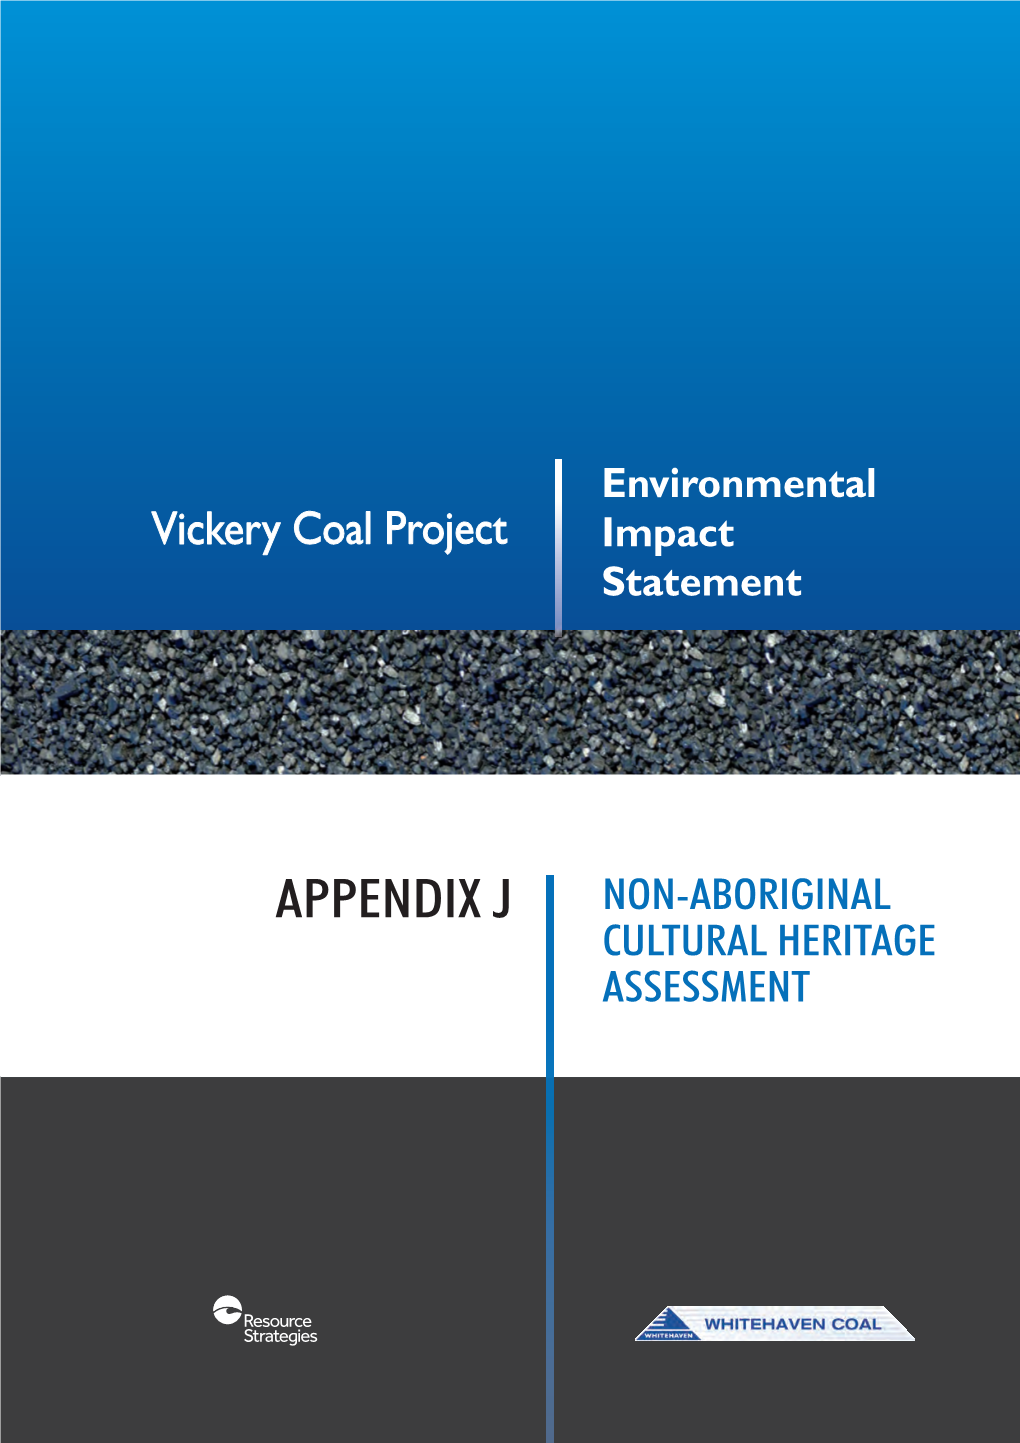 Appendix J Non-Aboriginal Cultural Heritage Assessment Assessment Heritage Cultural Non-Aboriginal Pedxj Appendix